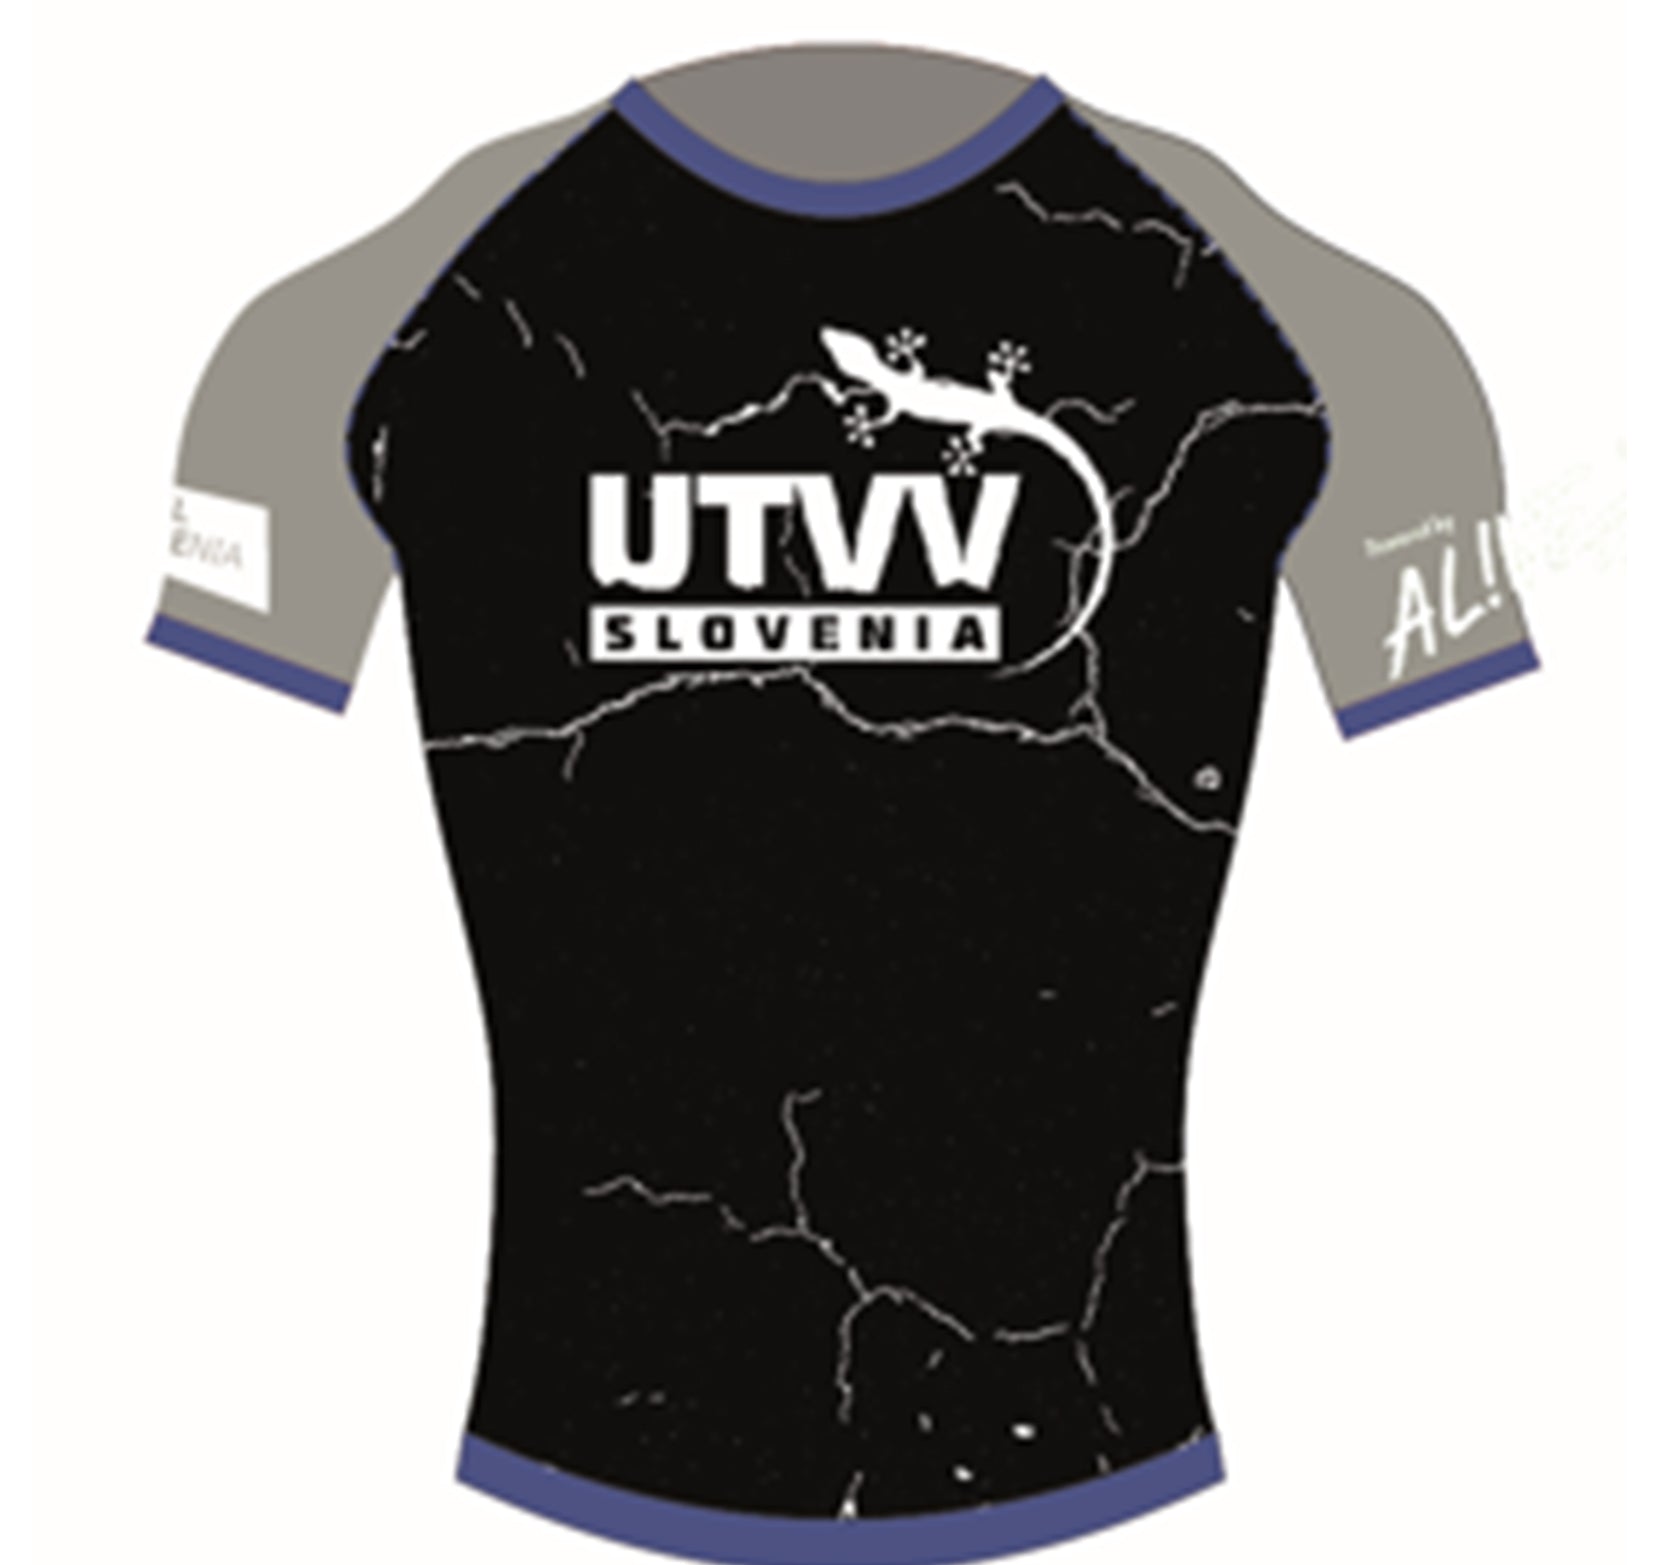 UTVV tehnična kratka majica 2022 - modra (brez lycre)